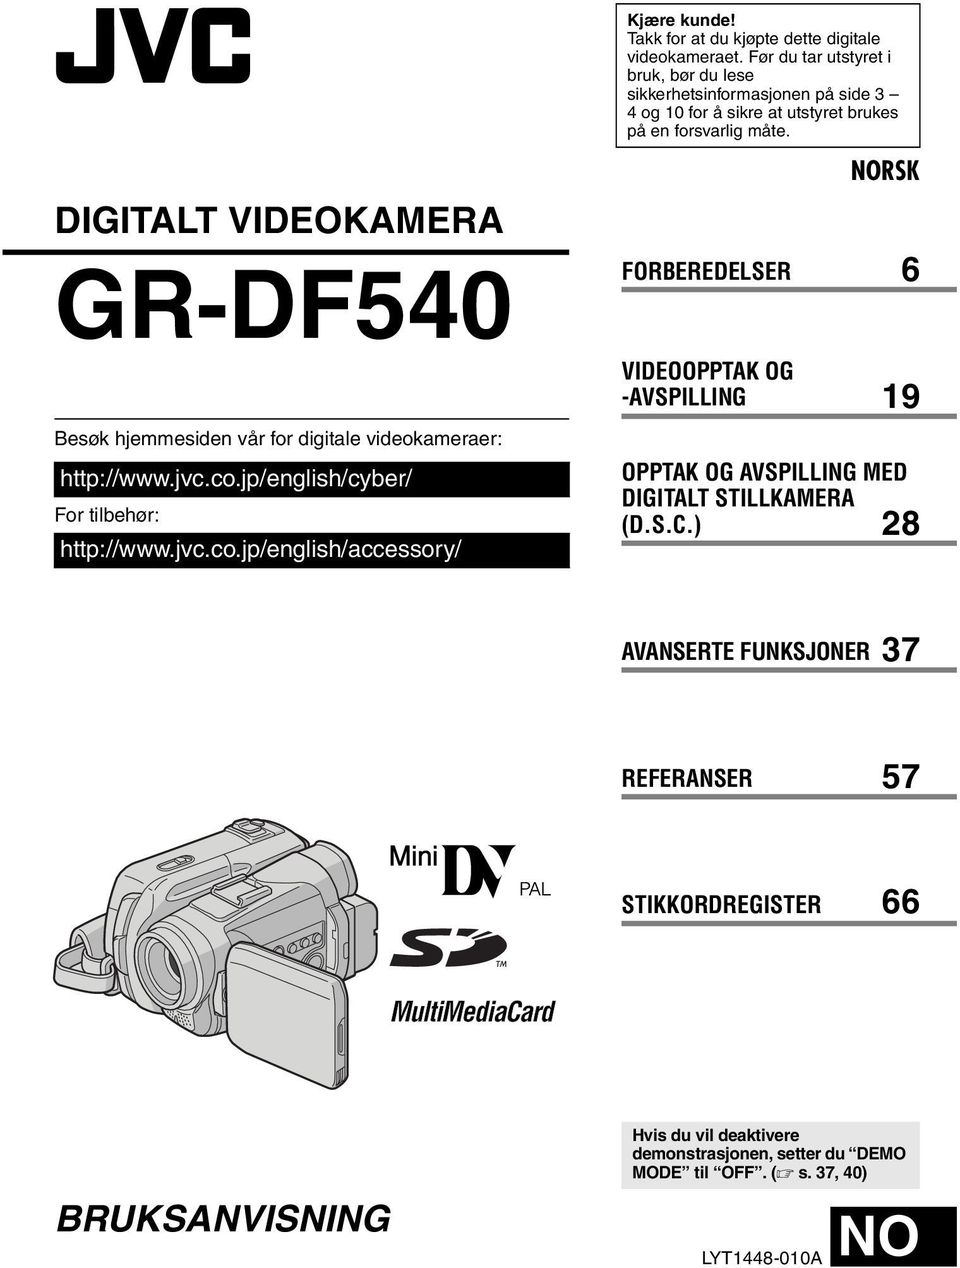 DIGITALT VIDEOKAMERA GR-DF540 Besøk hjemmesiden vår for digitale videokameraer: http://www.jvc.co.